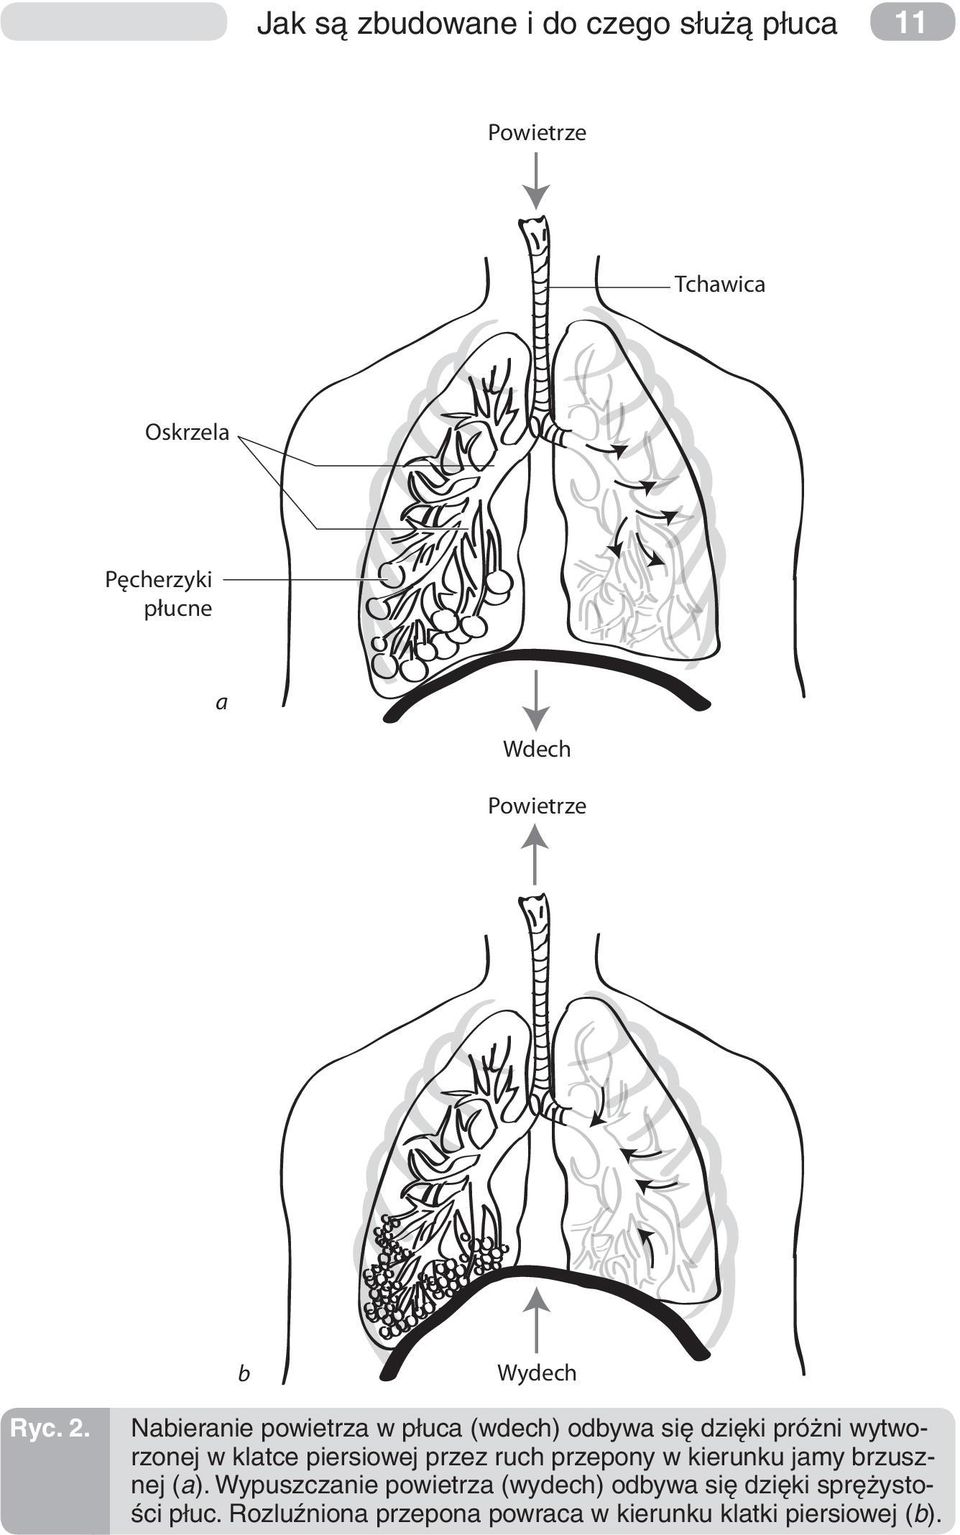 Nabieranie powietrza w płuca (wdech) odbywa się dzięki próżni wytworzonej w klatce piersiowej przez